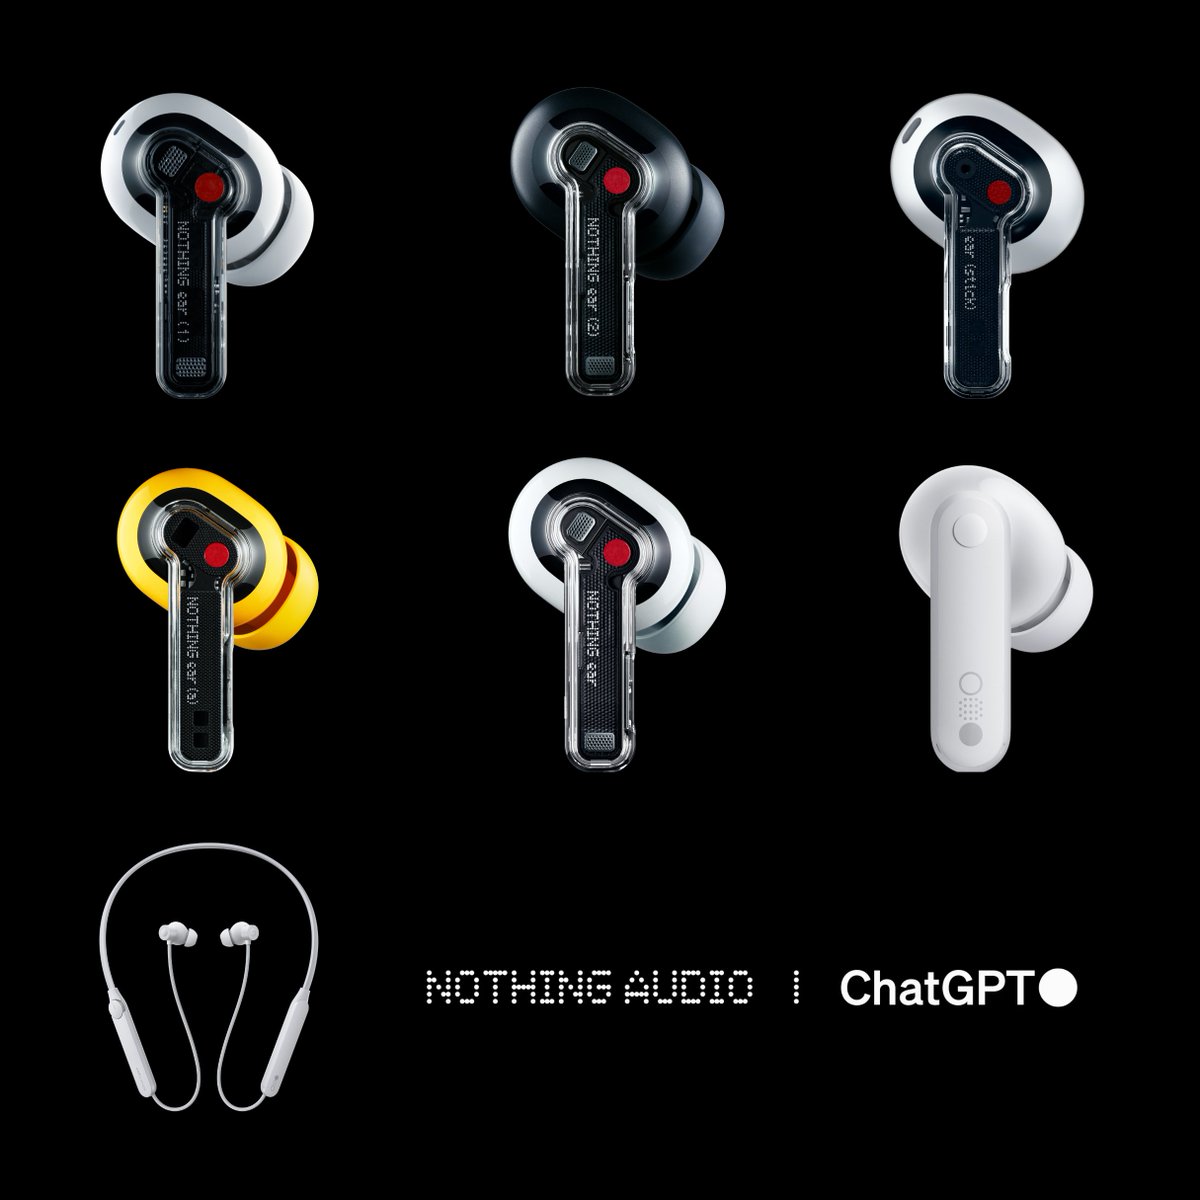 شركة #Nothing ستقوم بدمج ChatGPT في جميع منتجاتها الصوتية 🔥 بإمكانك التحدث إلى #ChatGPT مباشرة عن طريق النقر، في منتجات Nothing الصوتية المقترنة بهواتف Nothing